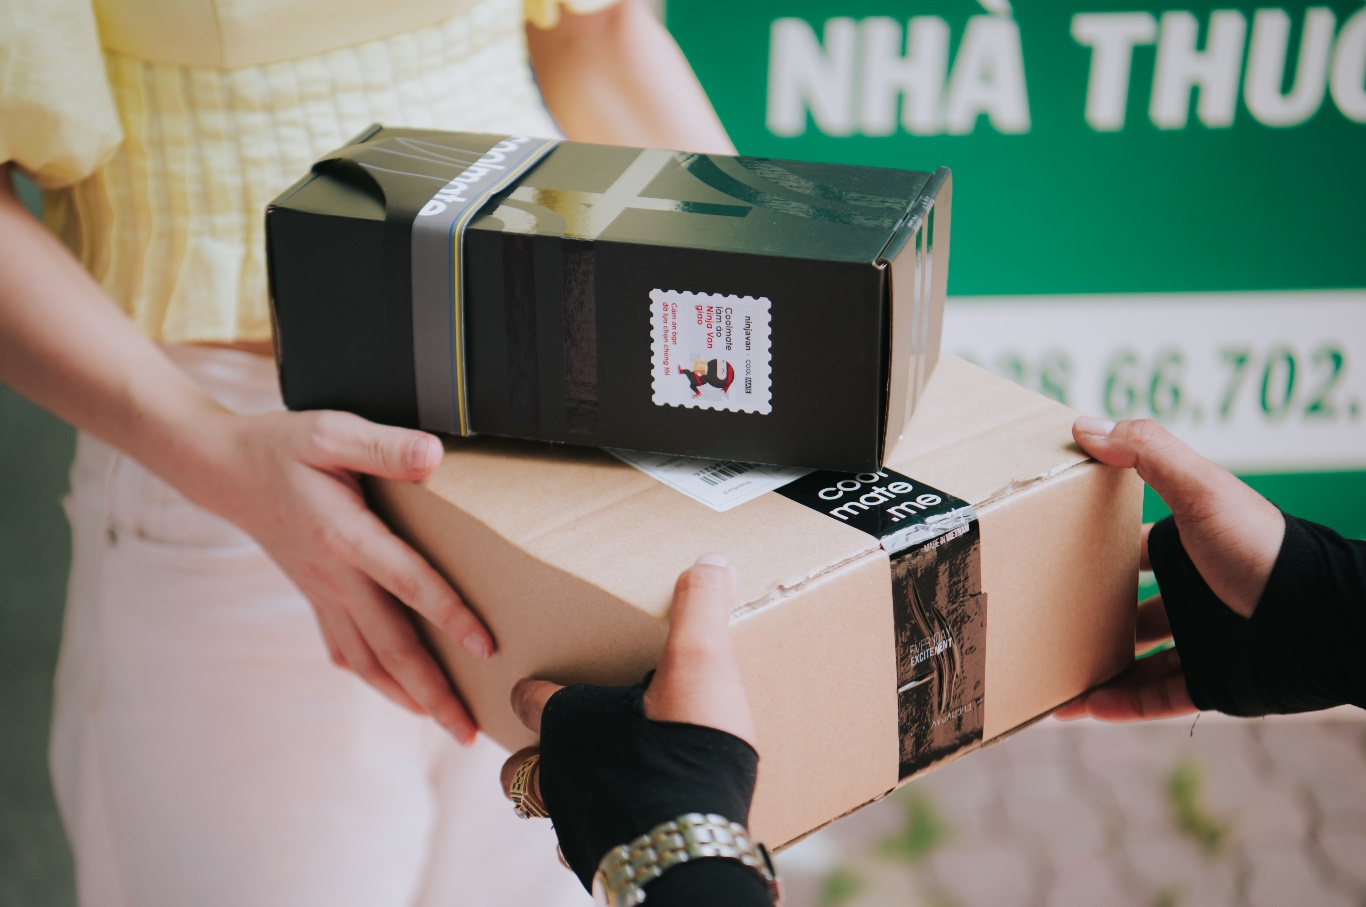 Ninja Van: Dịch vụ giao nhận quốc tế hỗ trợ đối tác xây dựng thương hiệu - Ảnh 3.